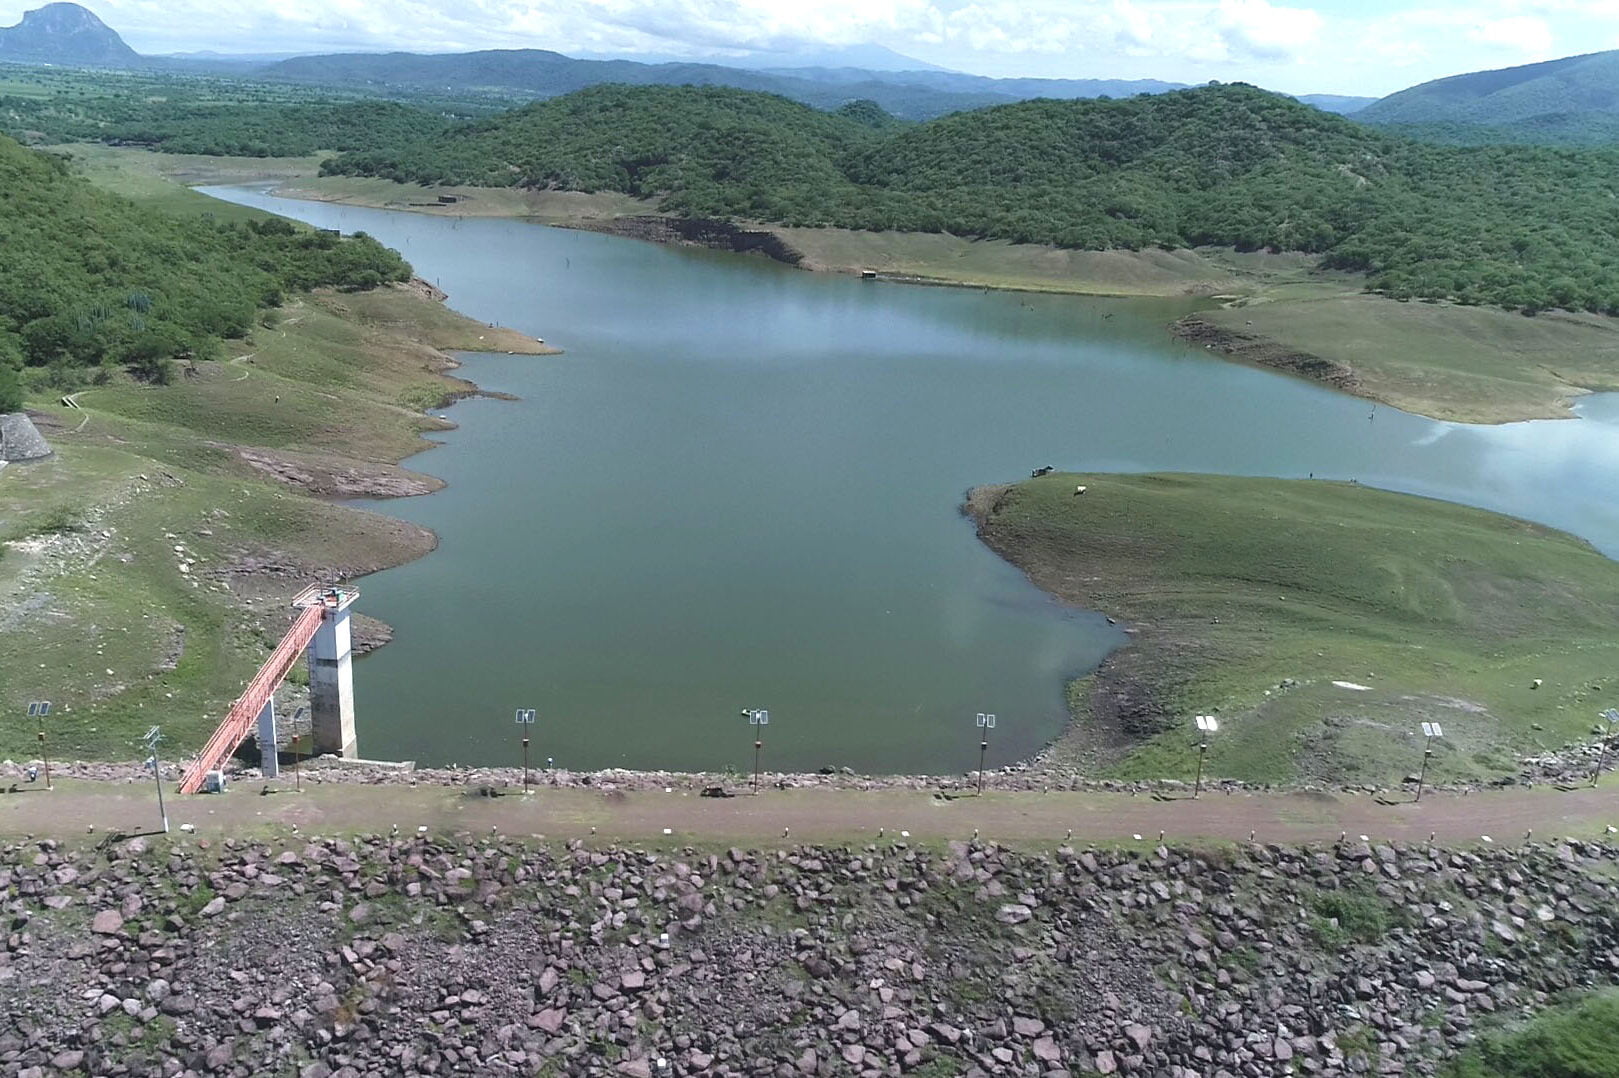 Cuerpos de agua en Morelos no representan riesgo para la población: Ceagua